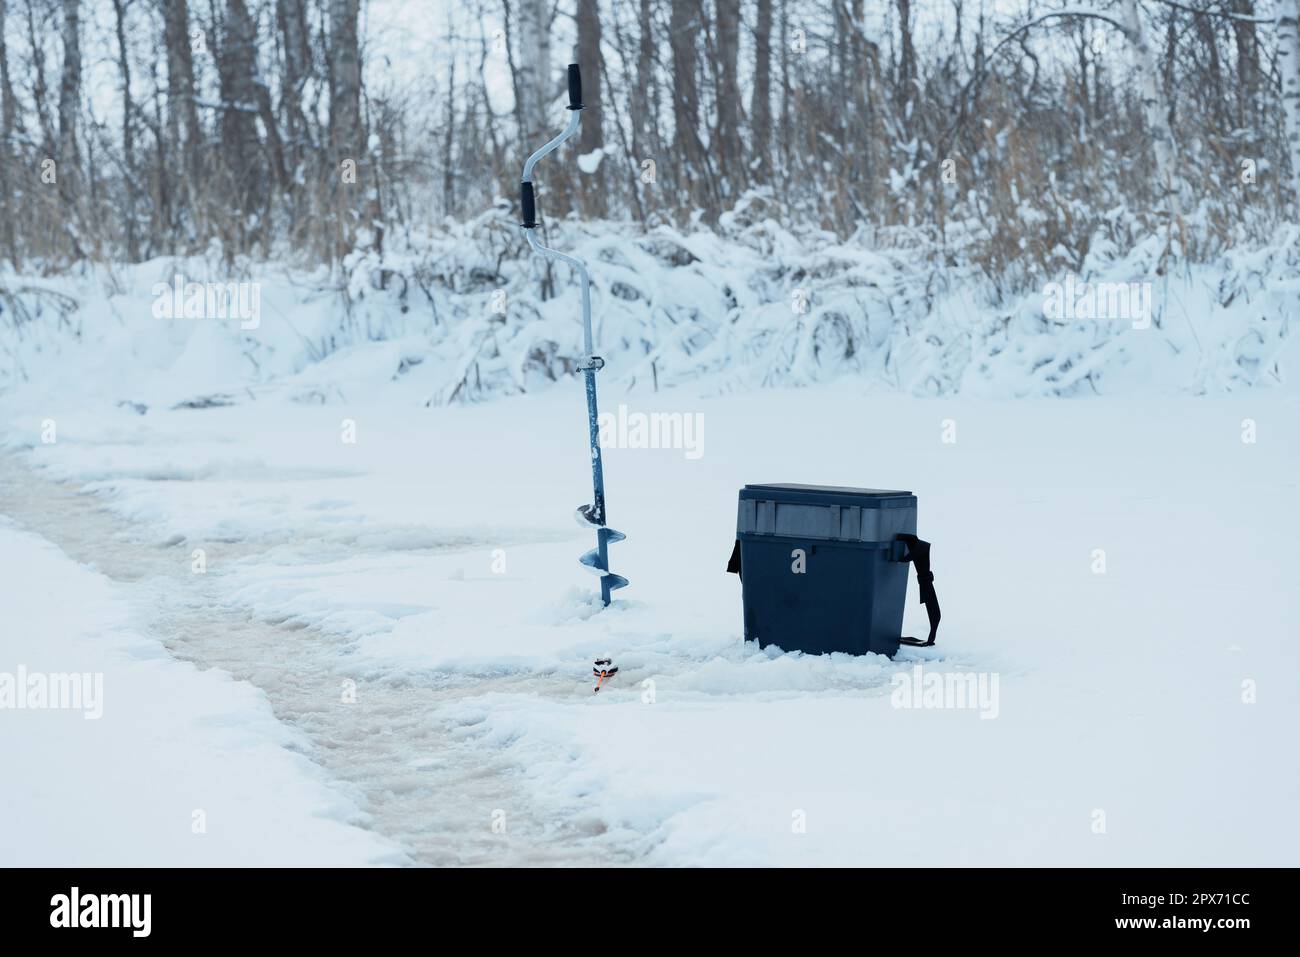 Boîte à pêche, canne à pêche et exercice sur glace près du trou sur la glace en hiver Banque D'Images